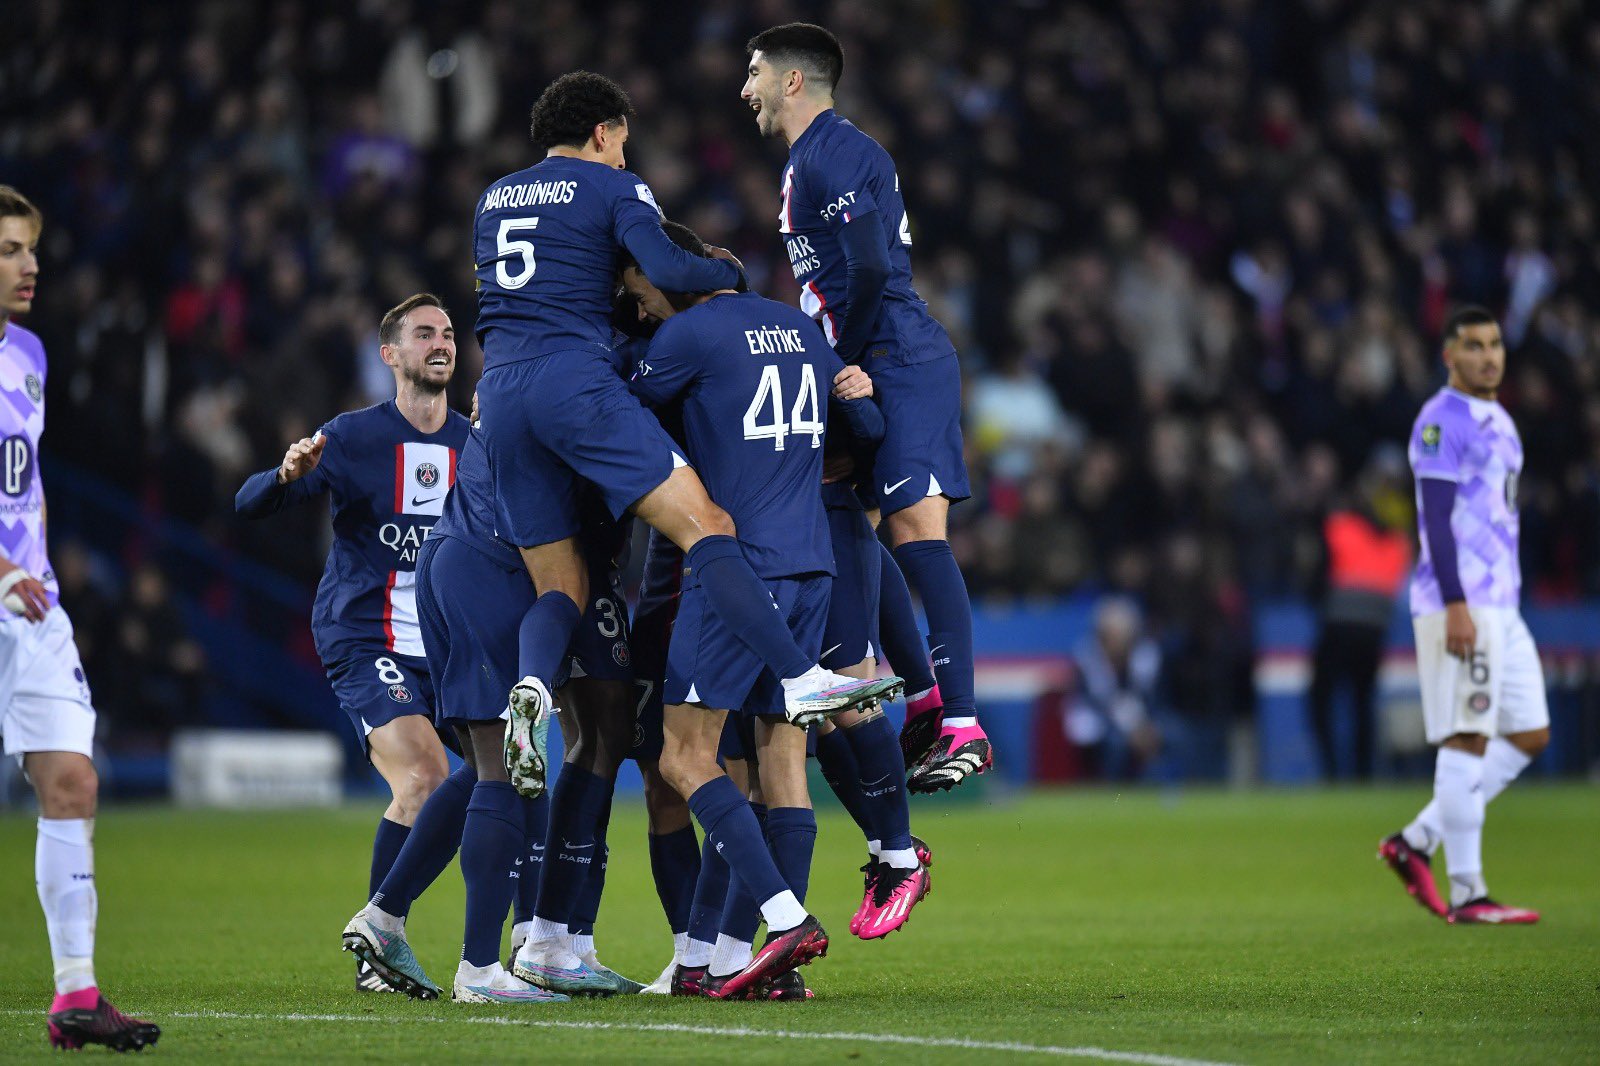 Con un golazo de Messi, PSG derrotó a Toulouse y sigue en lo más alto de la Ligue 1 | Canal Showsport